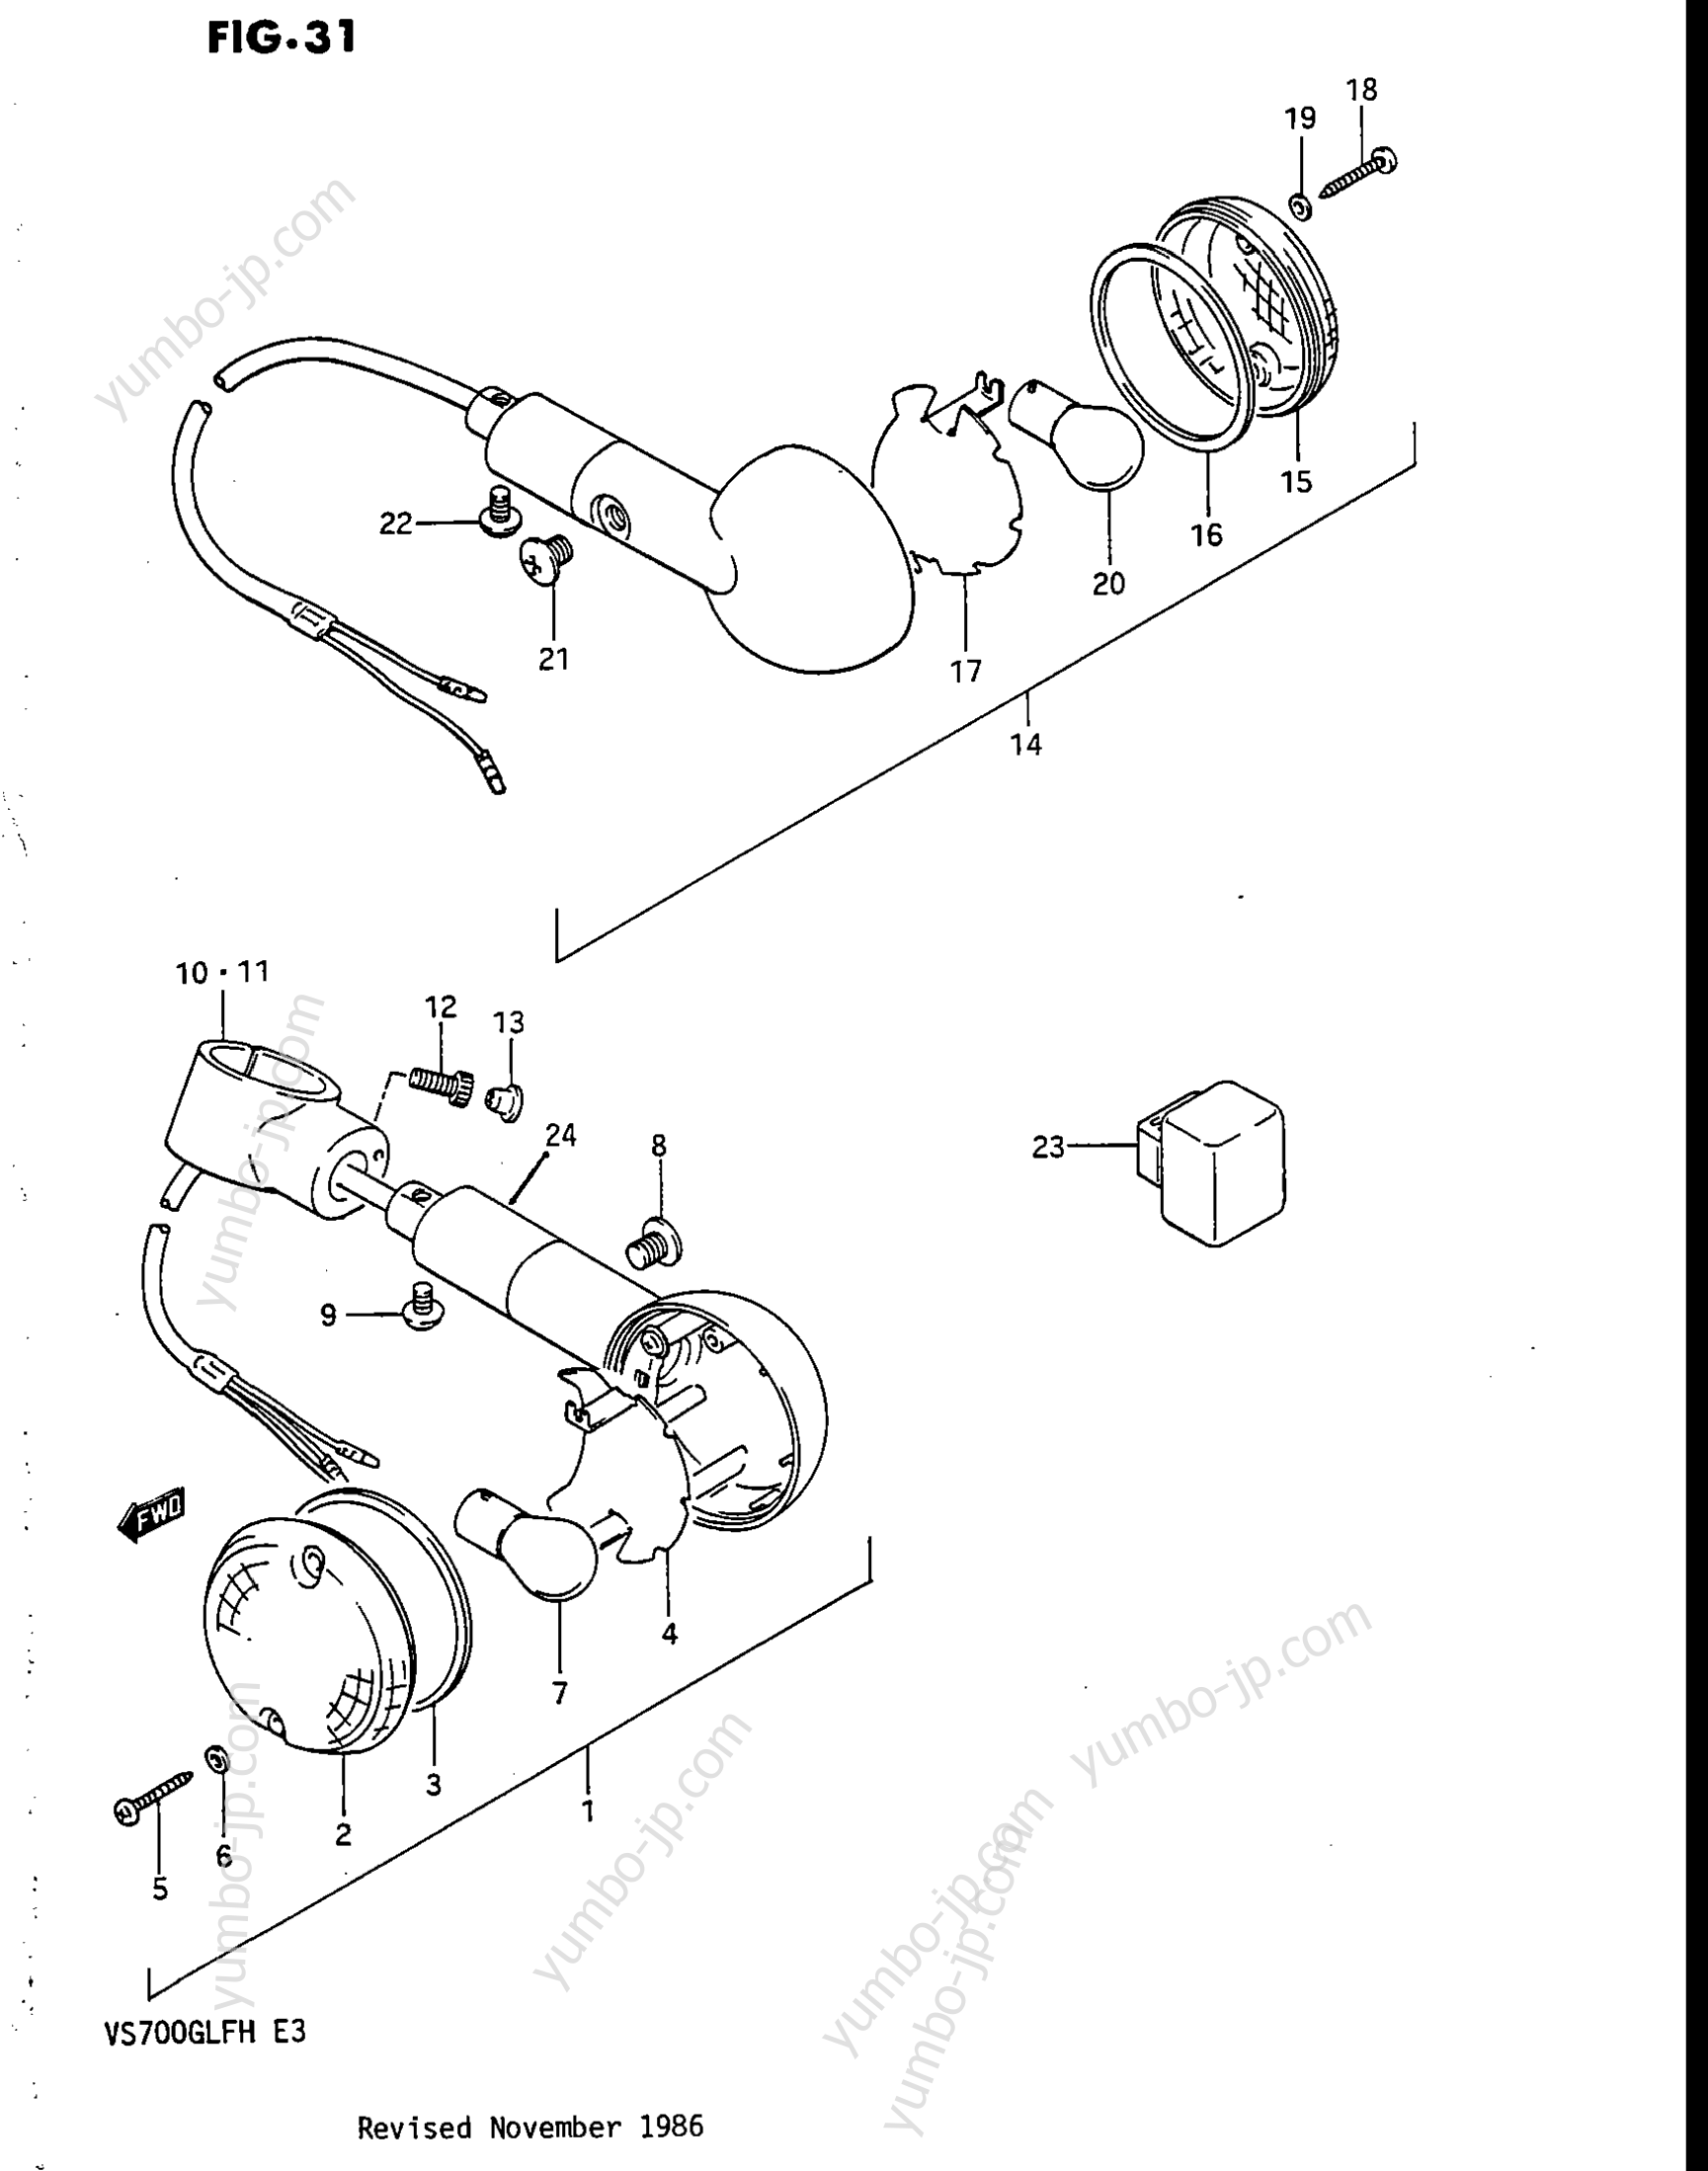 TURN SIGNAL LAMP для мотоциклов SUZUKI Intruder (VS700GLEF) 1987 г.